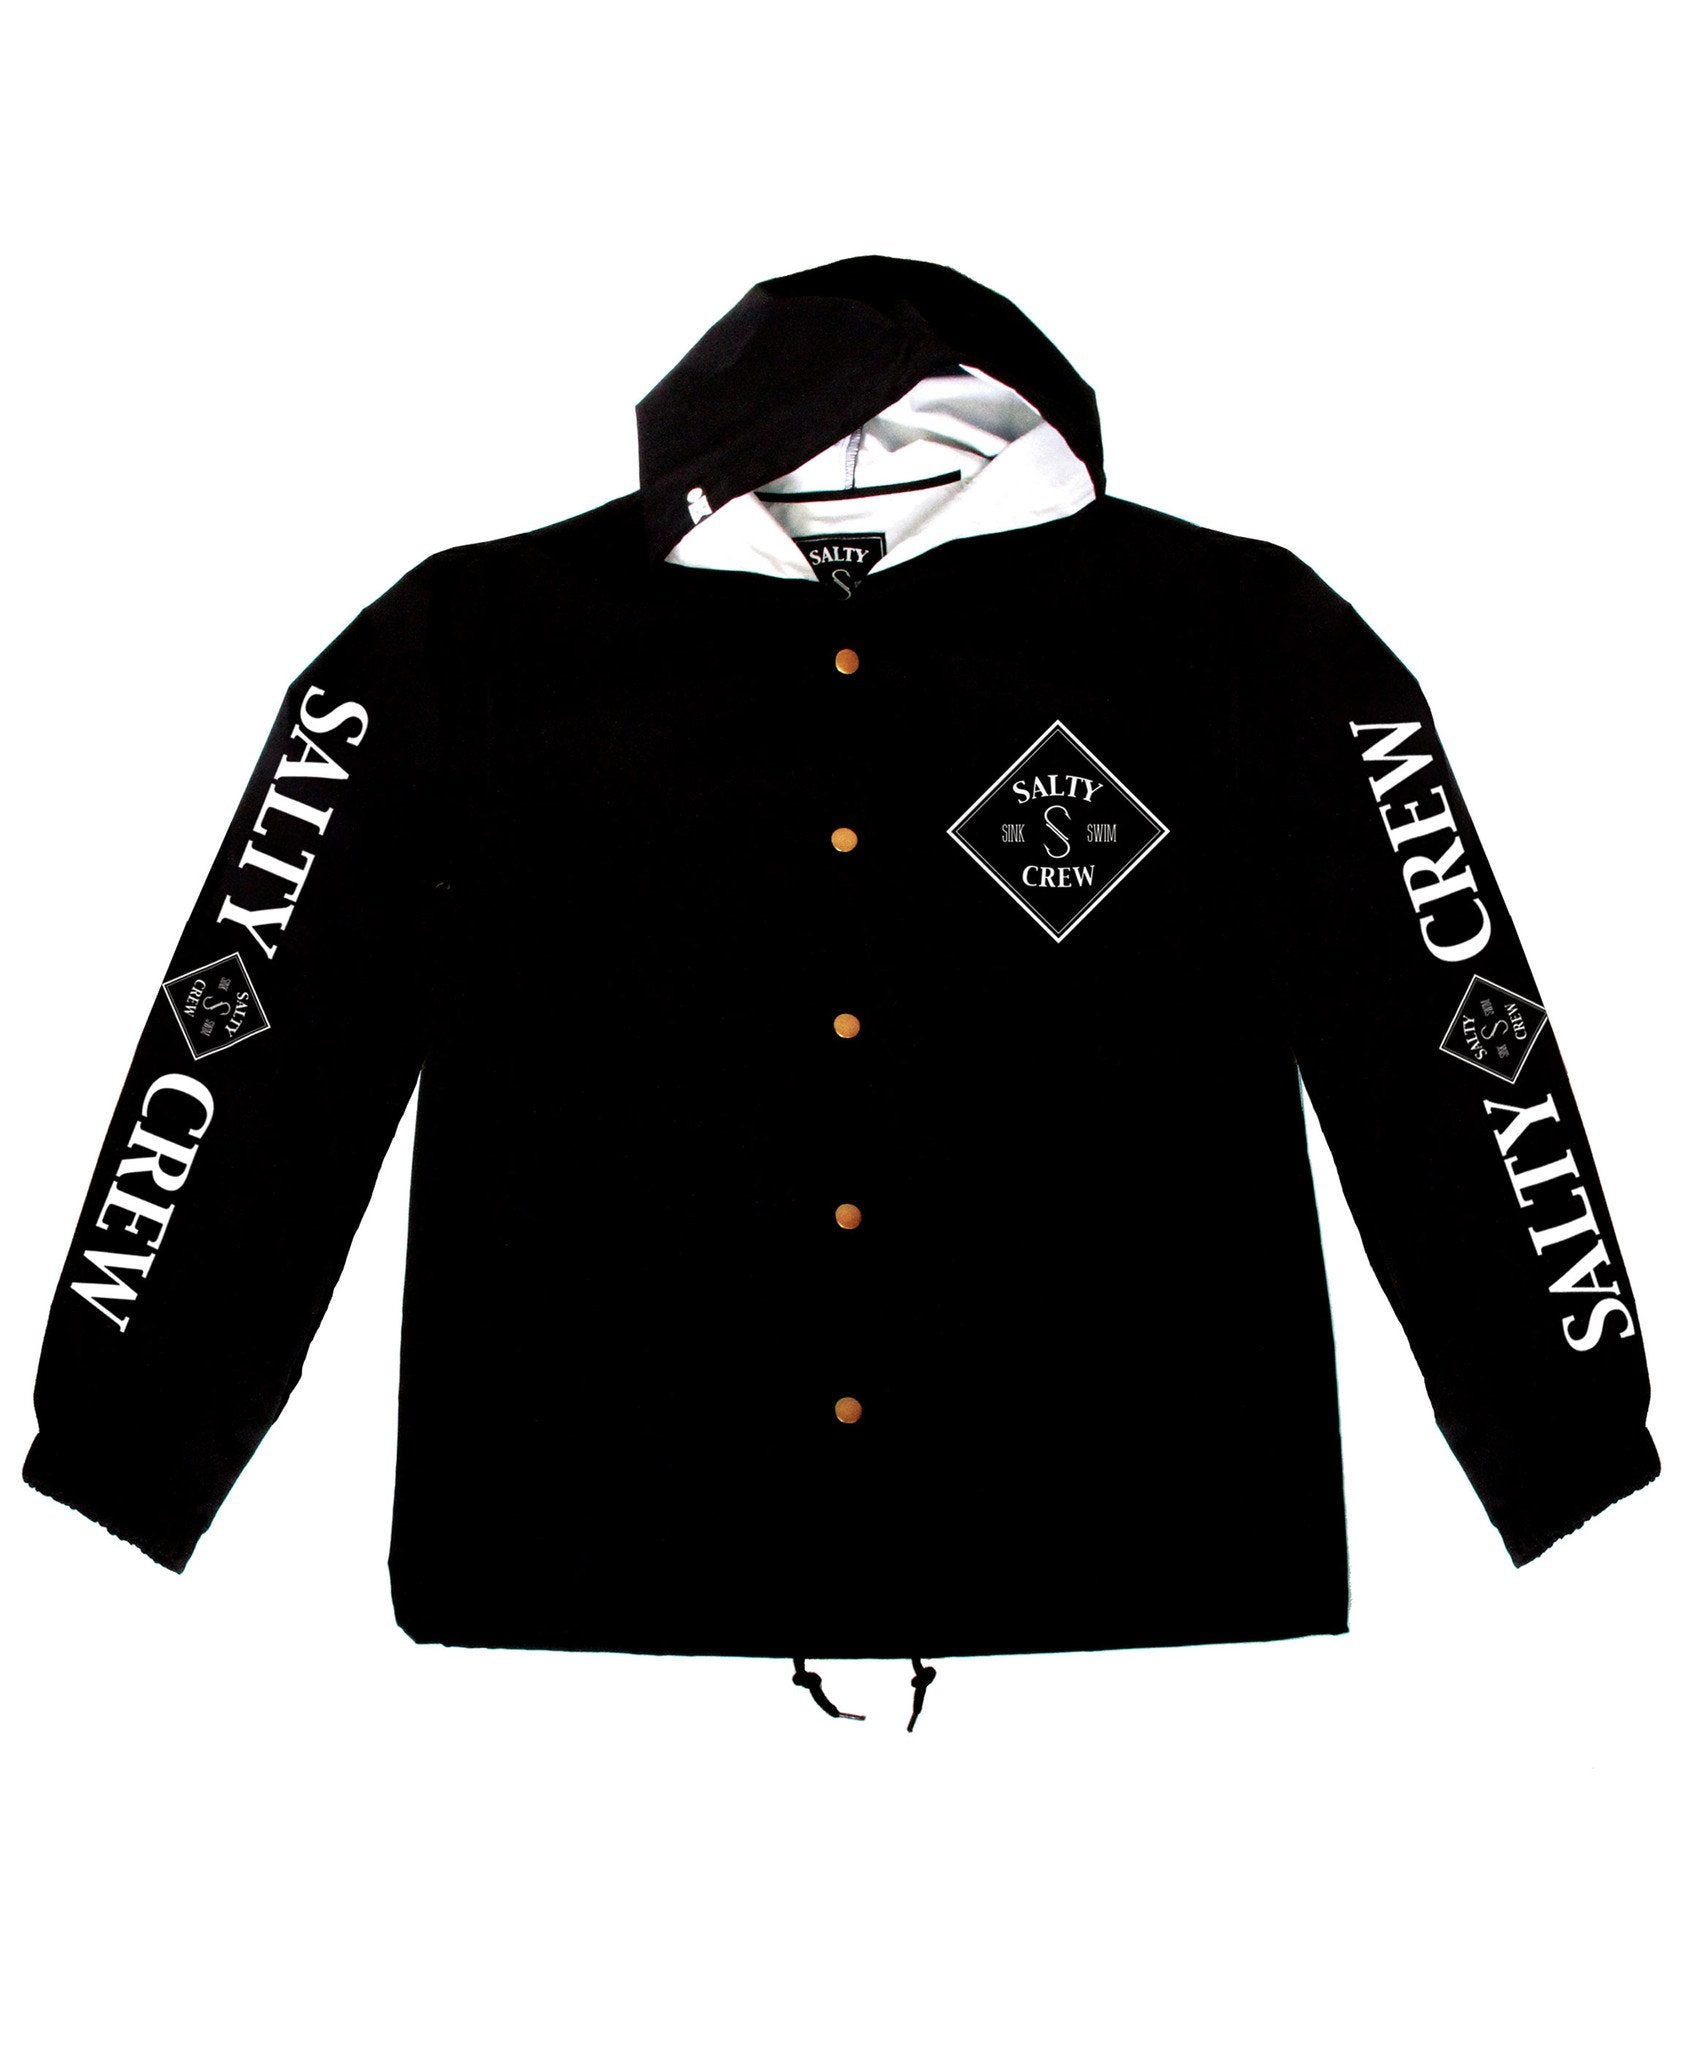 Salty Crew Tippet Snap Jacket - Black mens jacket